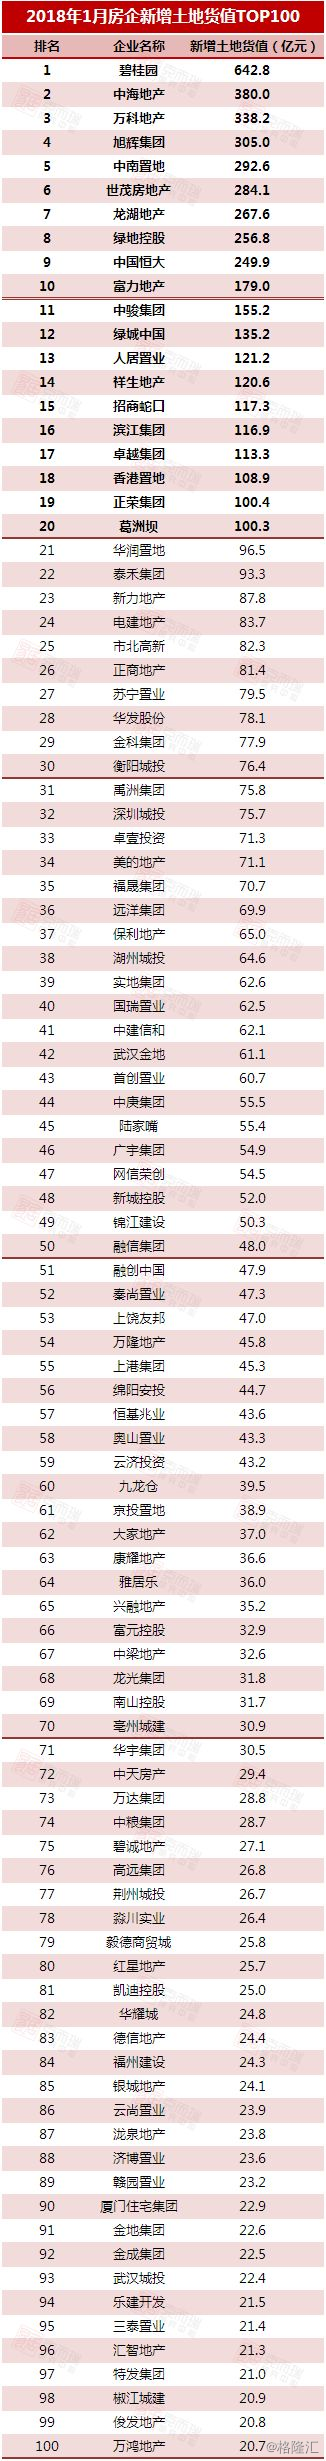 2018年1月中国房地产企业新增货值TOP100